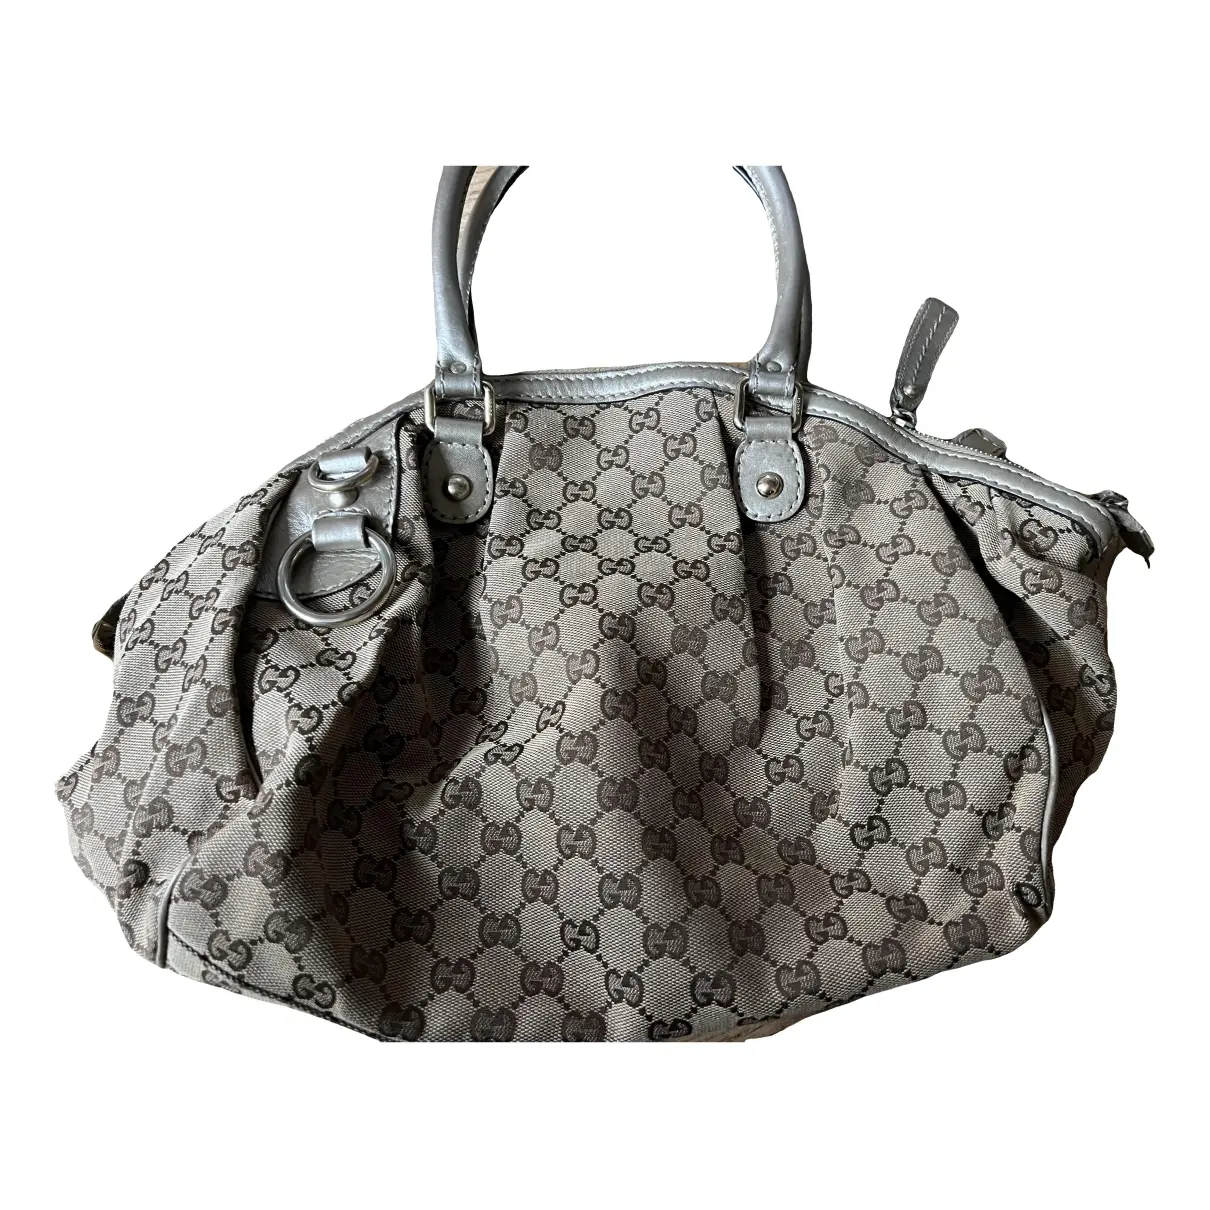 Diana cloth handbag Gucci